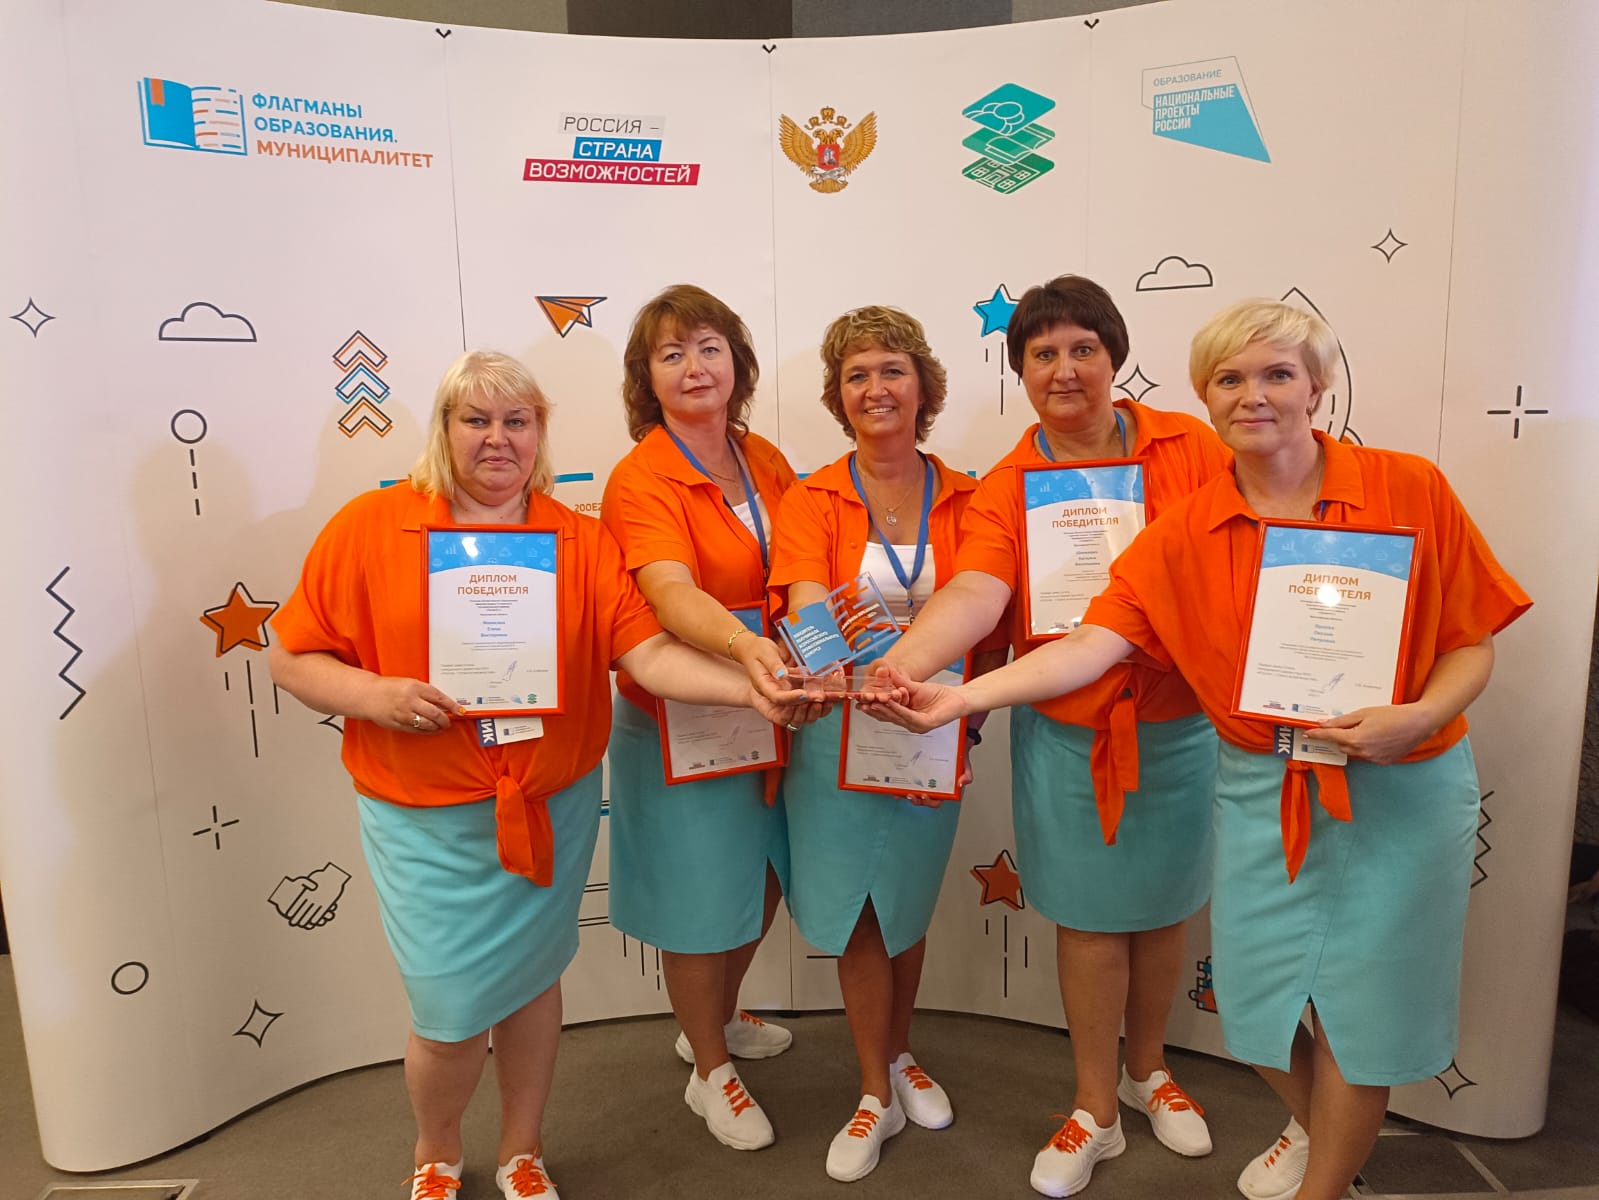 Ярославская команда стала финалистом всероссийского конкурса «Флагманы образования. Муниципалитет»